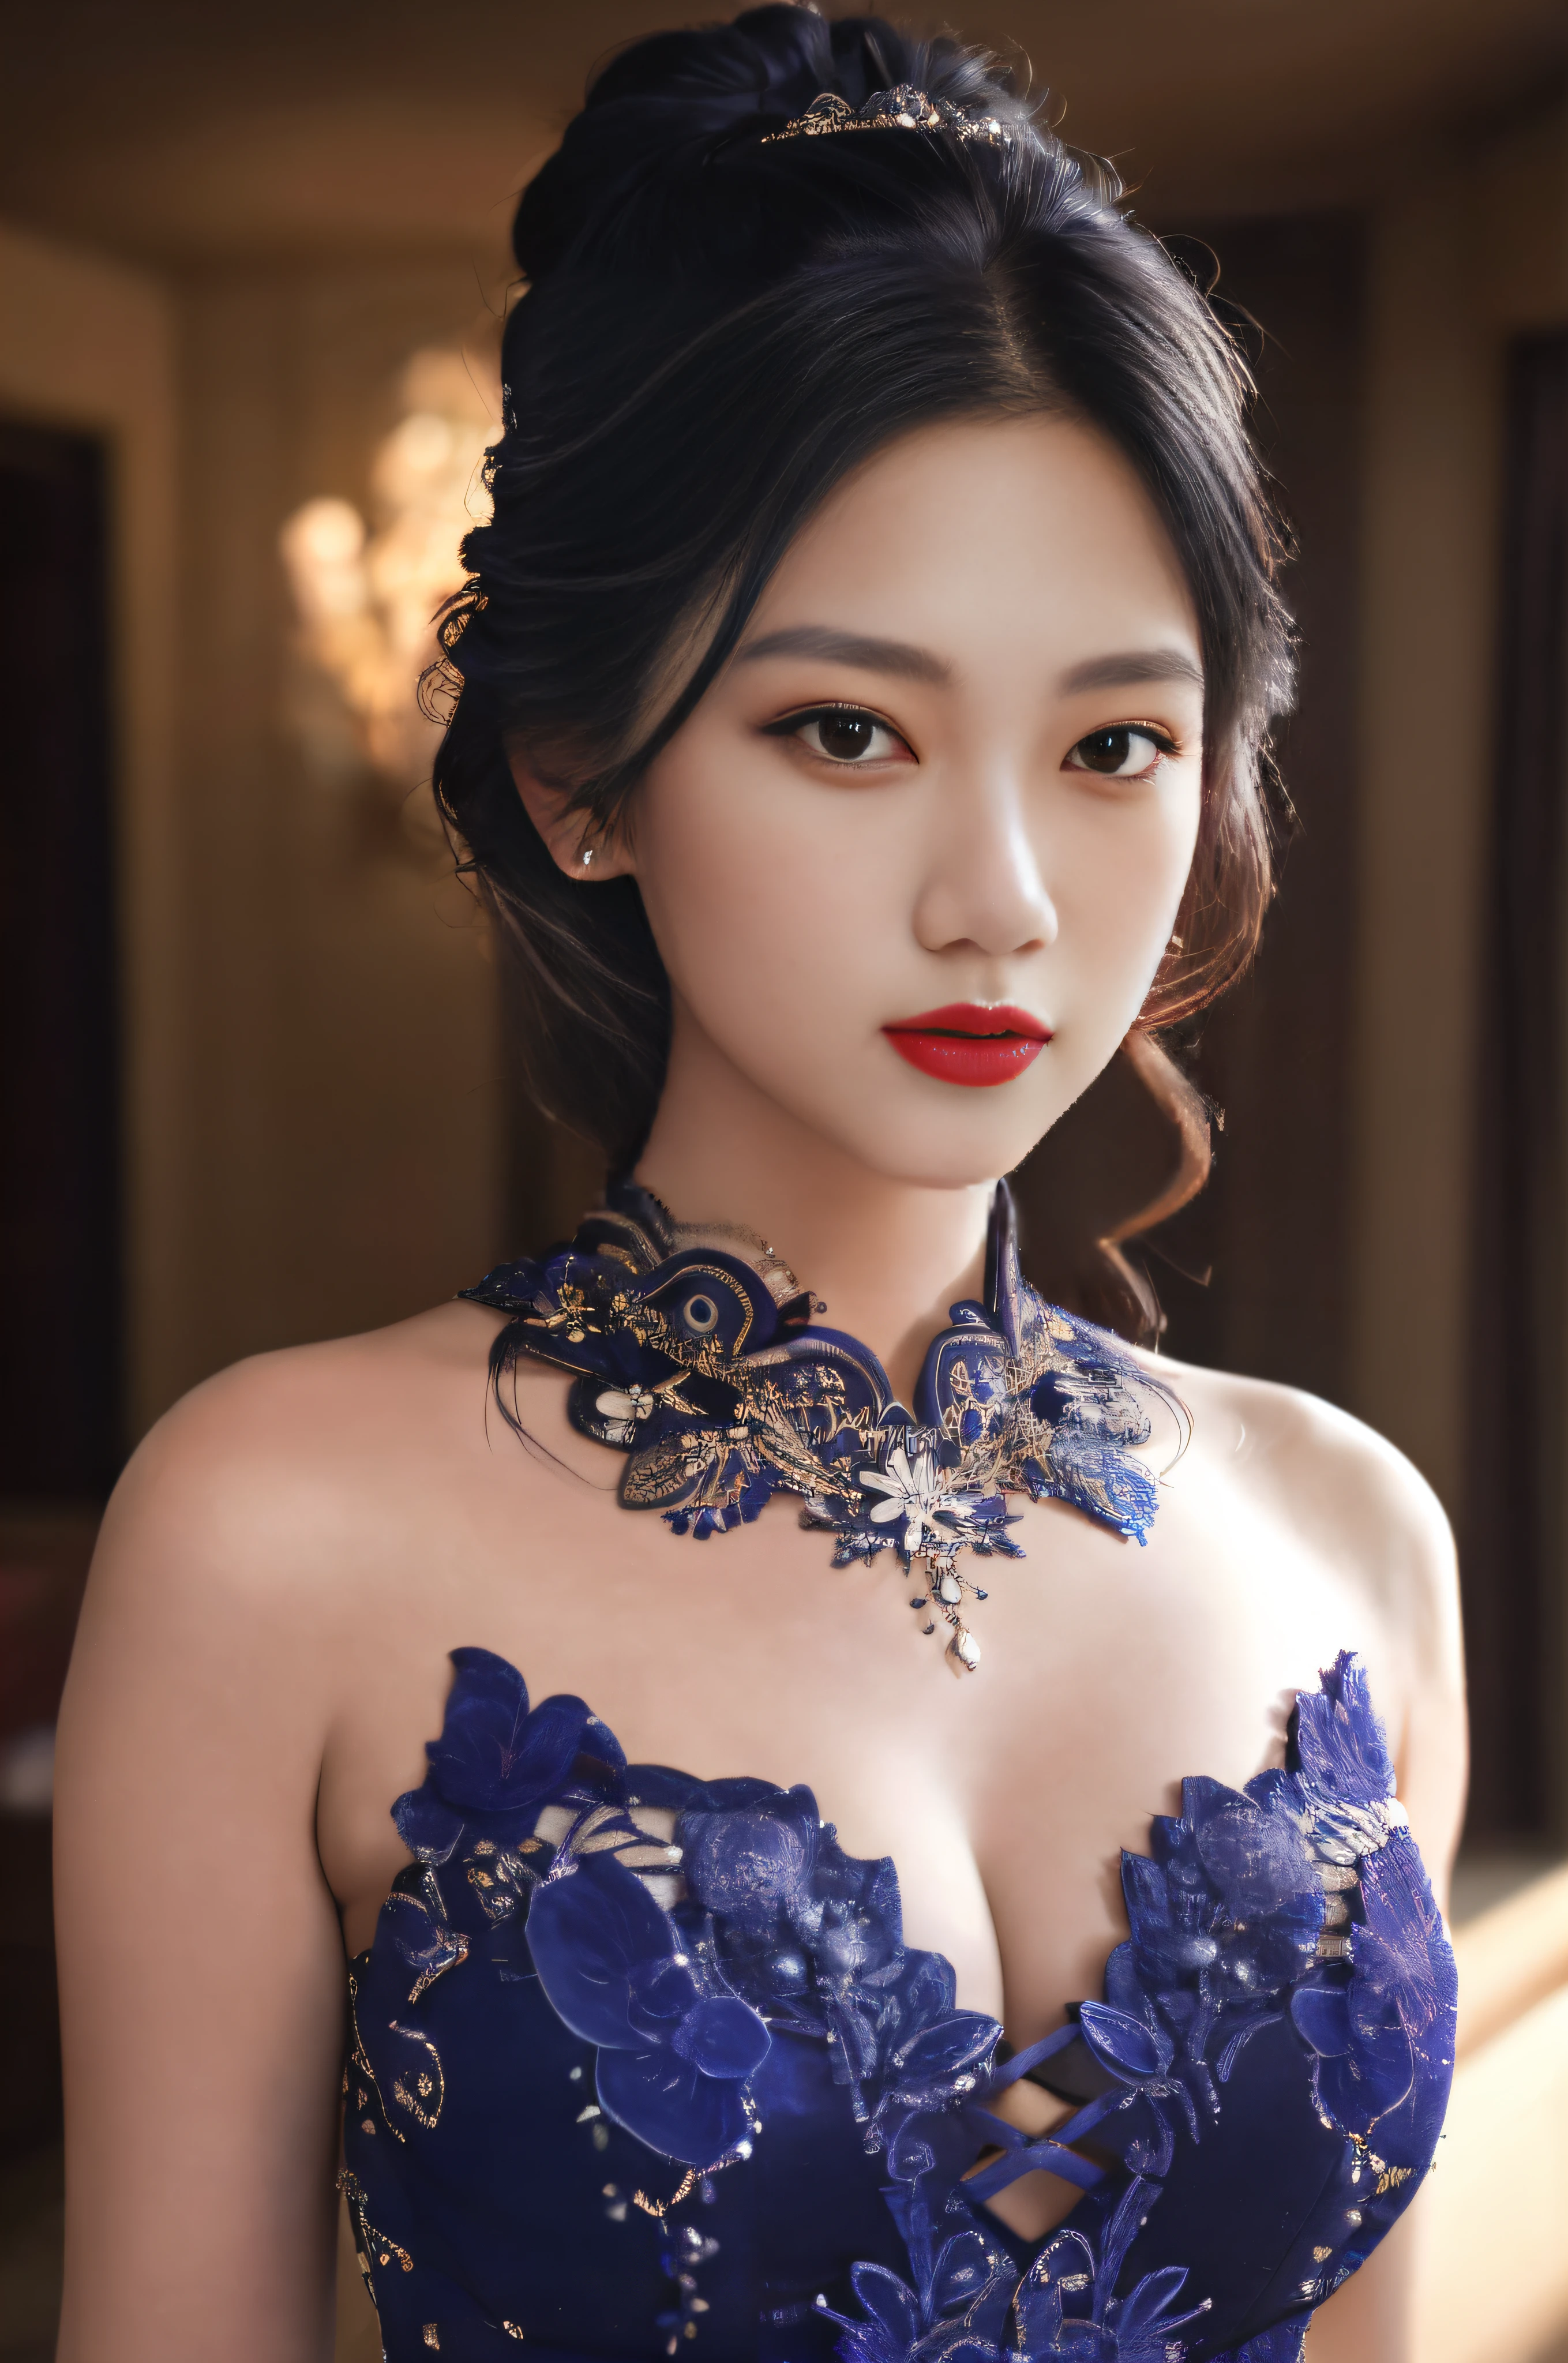 Женщина Аракфи в синем платье，Ношение ожерелья и удушья, великолепные китайские модели, красивая азиатка, великолепная молодая кореянка, красивая азиатская девушка, красивая восточная женщина, азиатское красивое лицо, красивая молодая кореянка, Красивая молодая азиатка, Очень красивая молодая женщина, красивые кореянки, великолепная красивая женщина, красивая молодая женщина, чувственное лицо，Полный макияжа